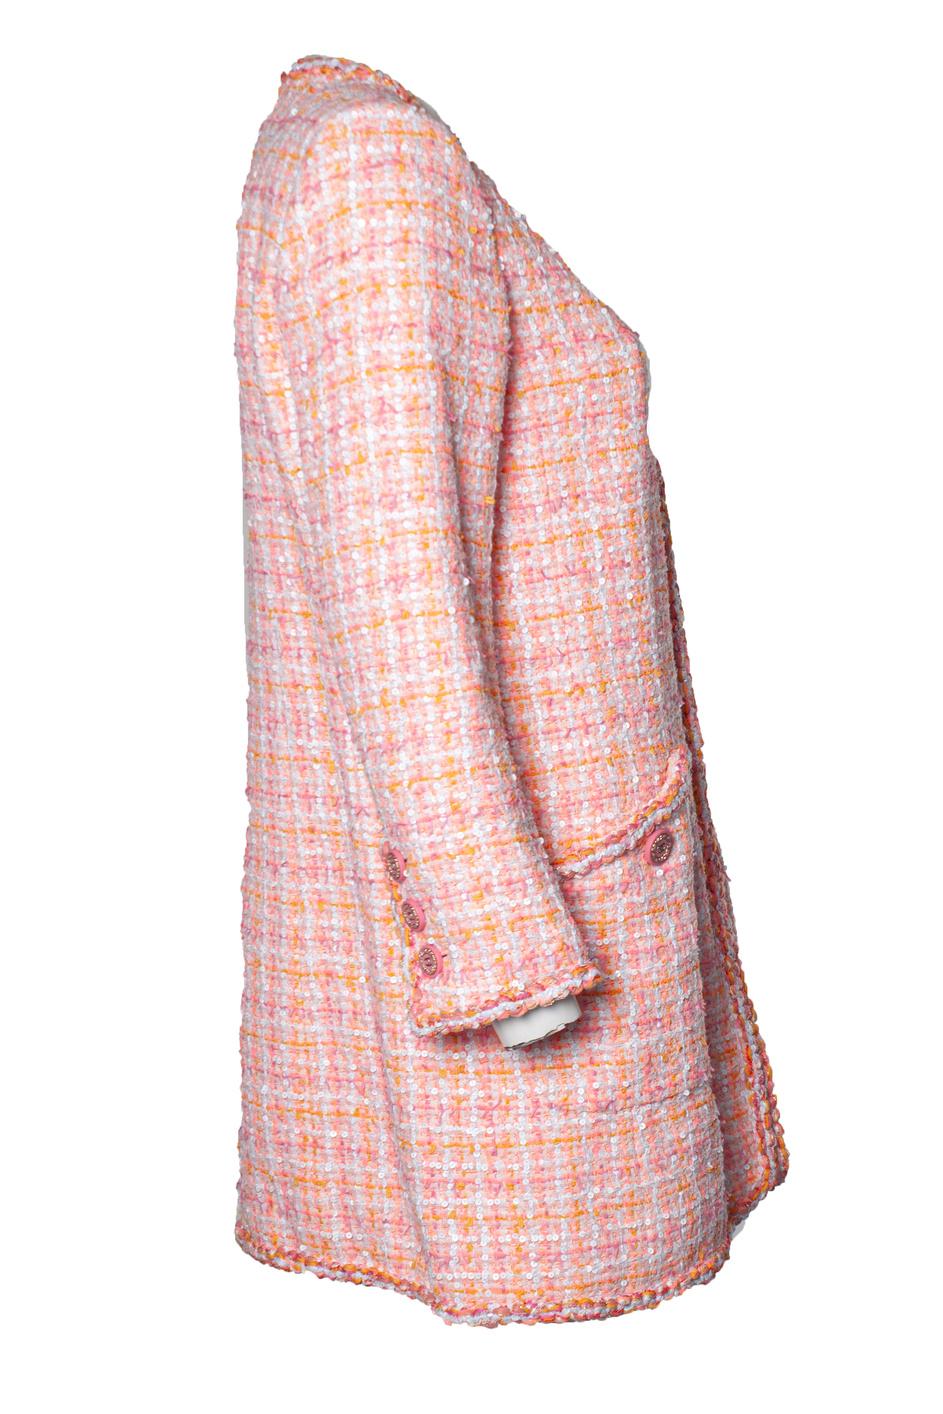 Women's Chanel, cruise 2019 pink tweed jacket